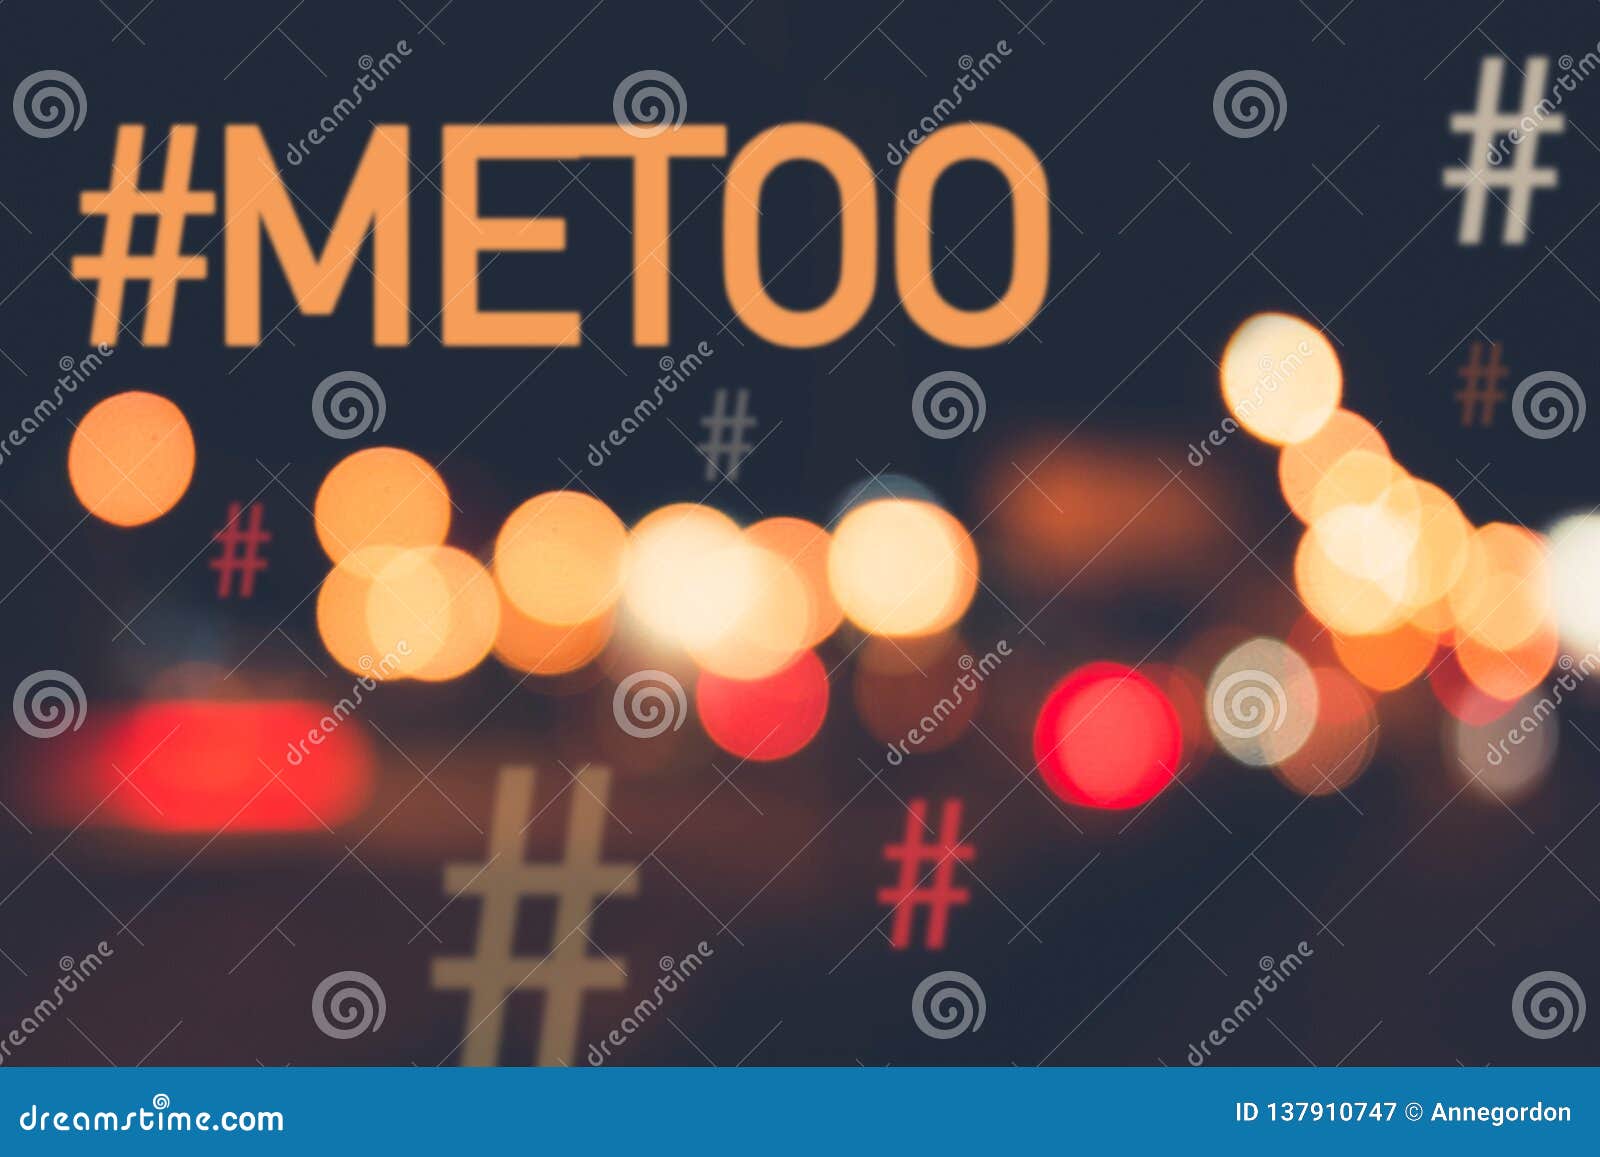 hashtag metoo / me too